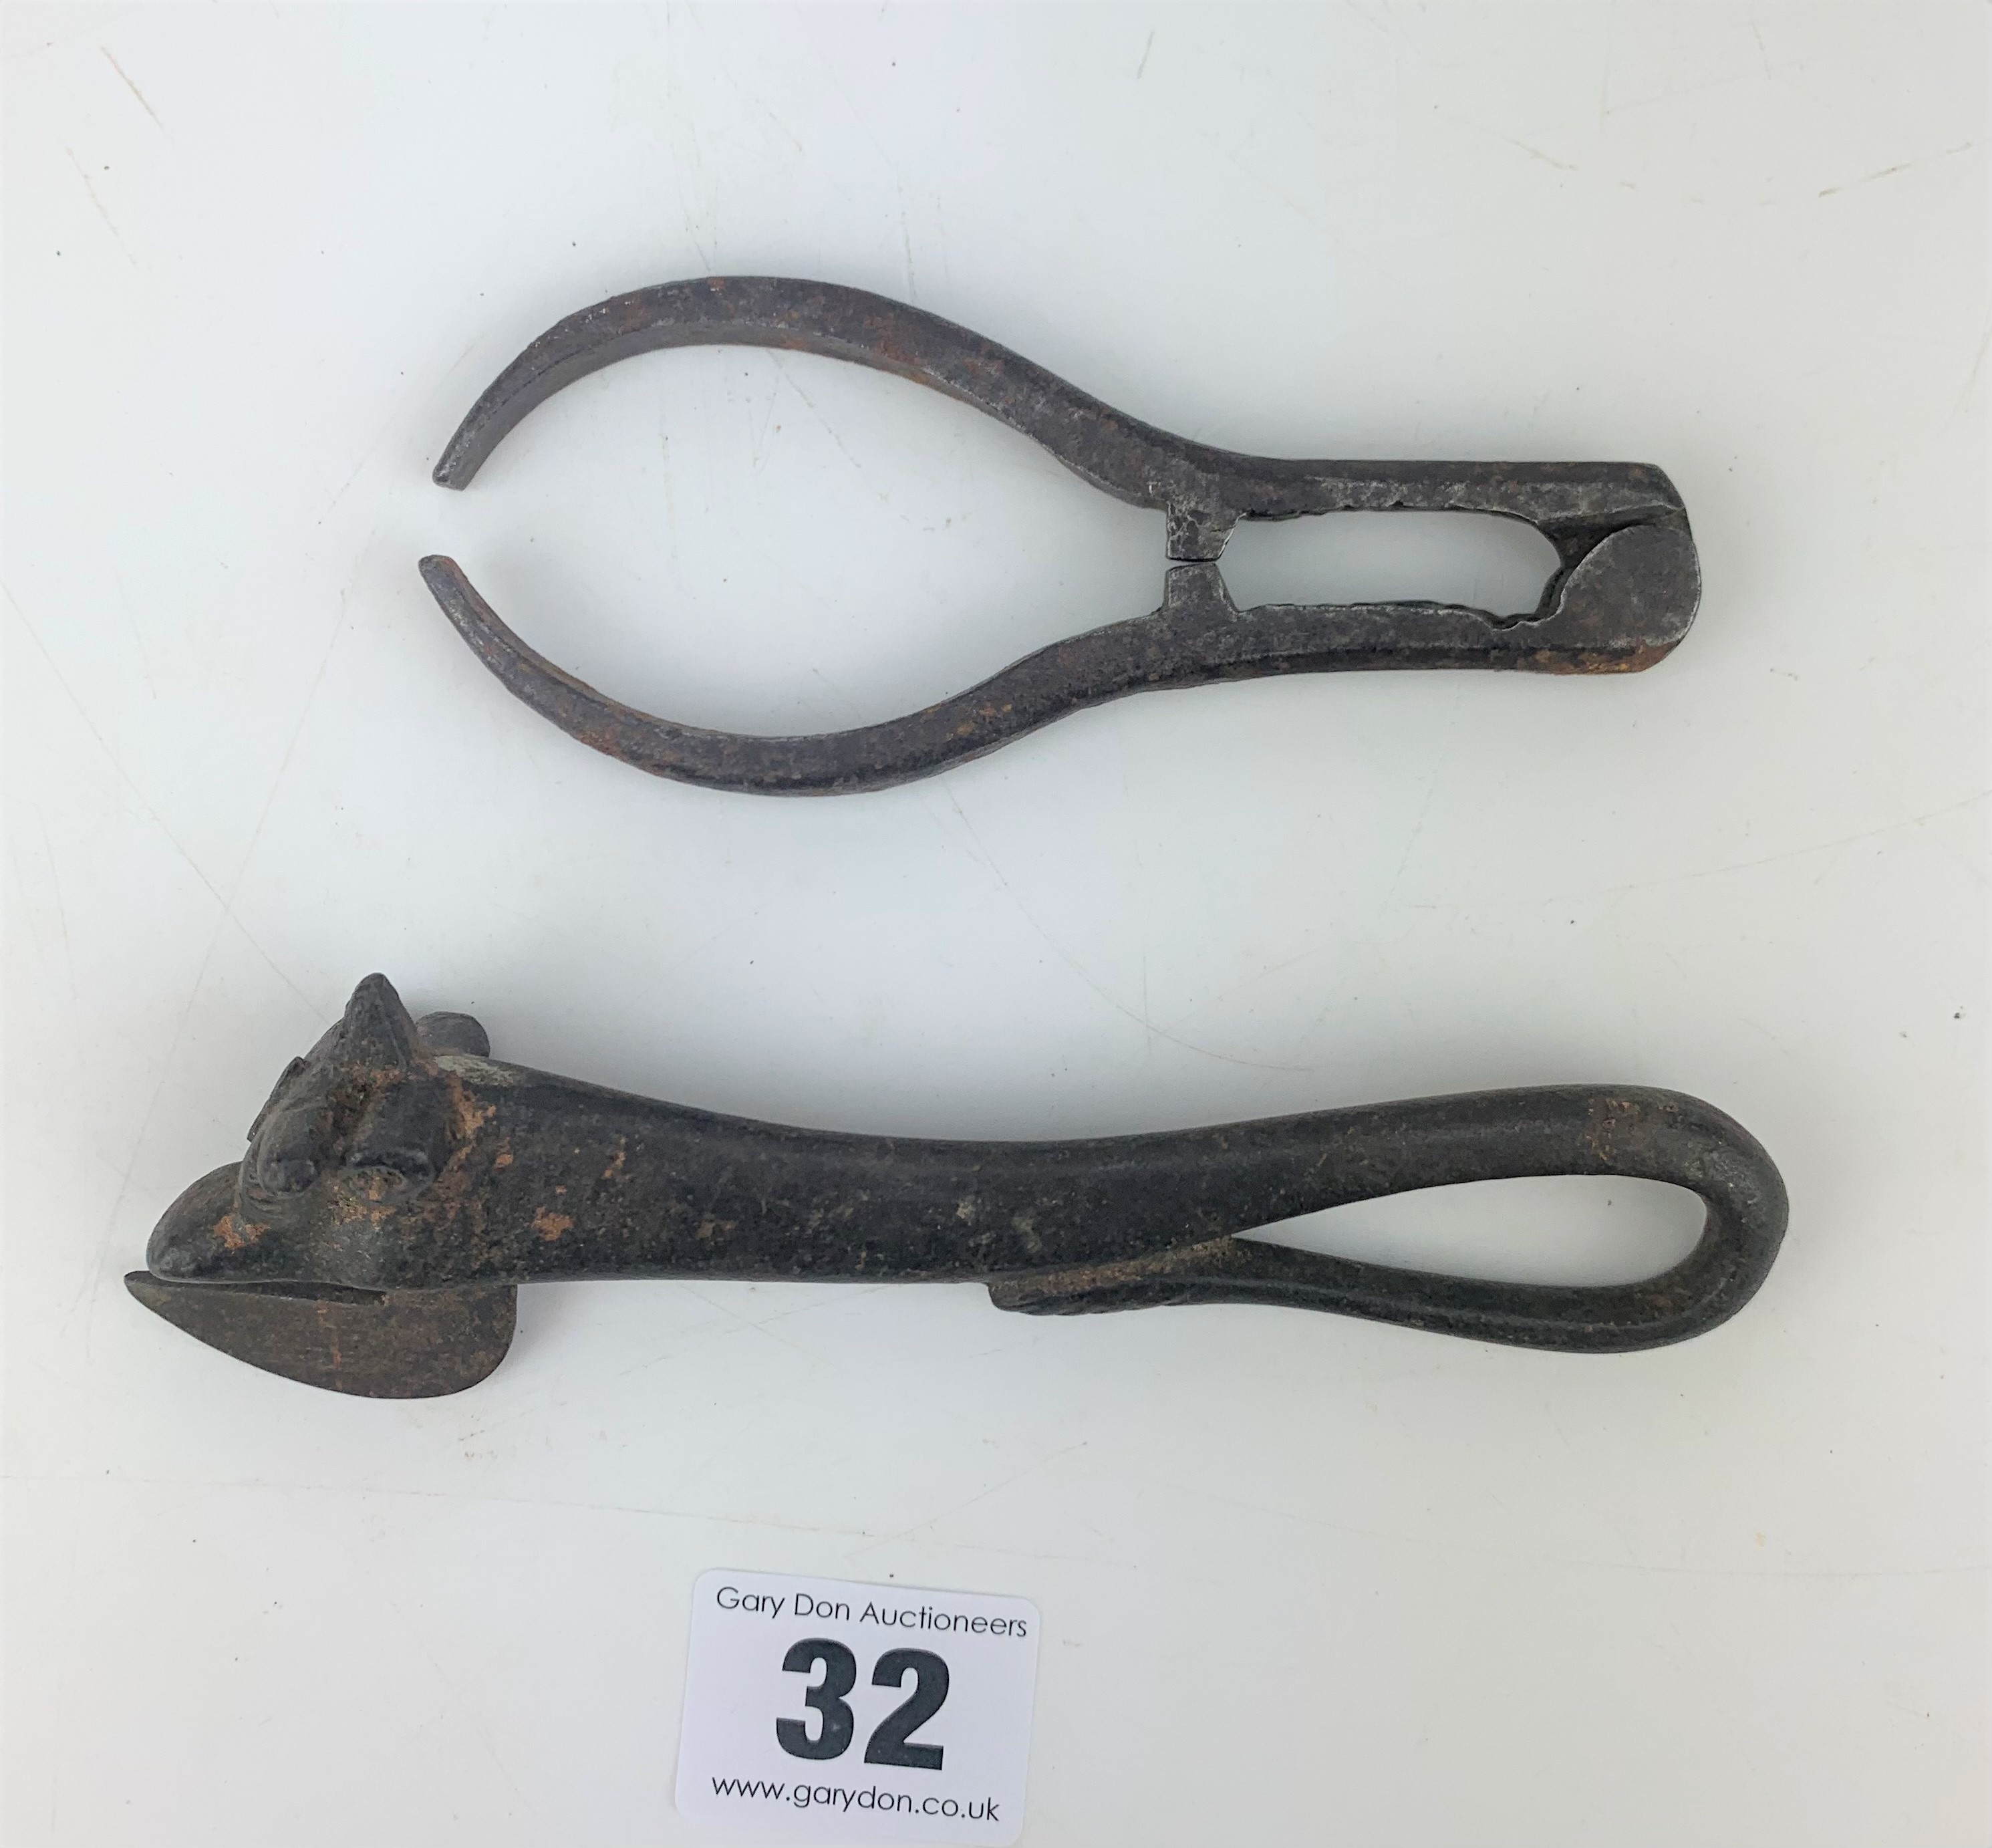 1885 bulls head can opener and metal tongs - Image 2 of 4